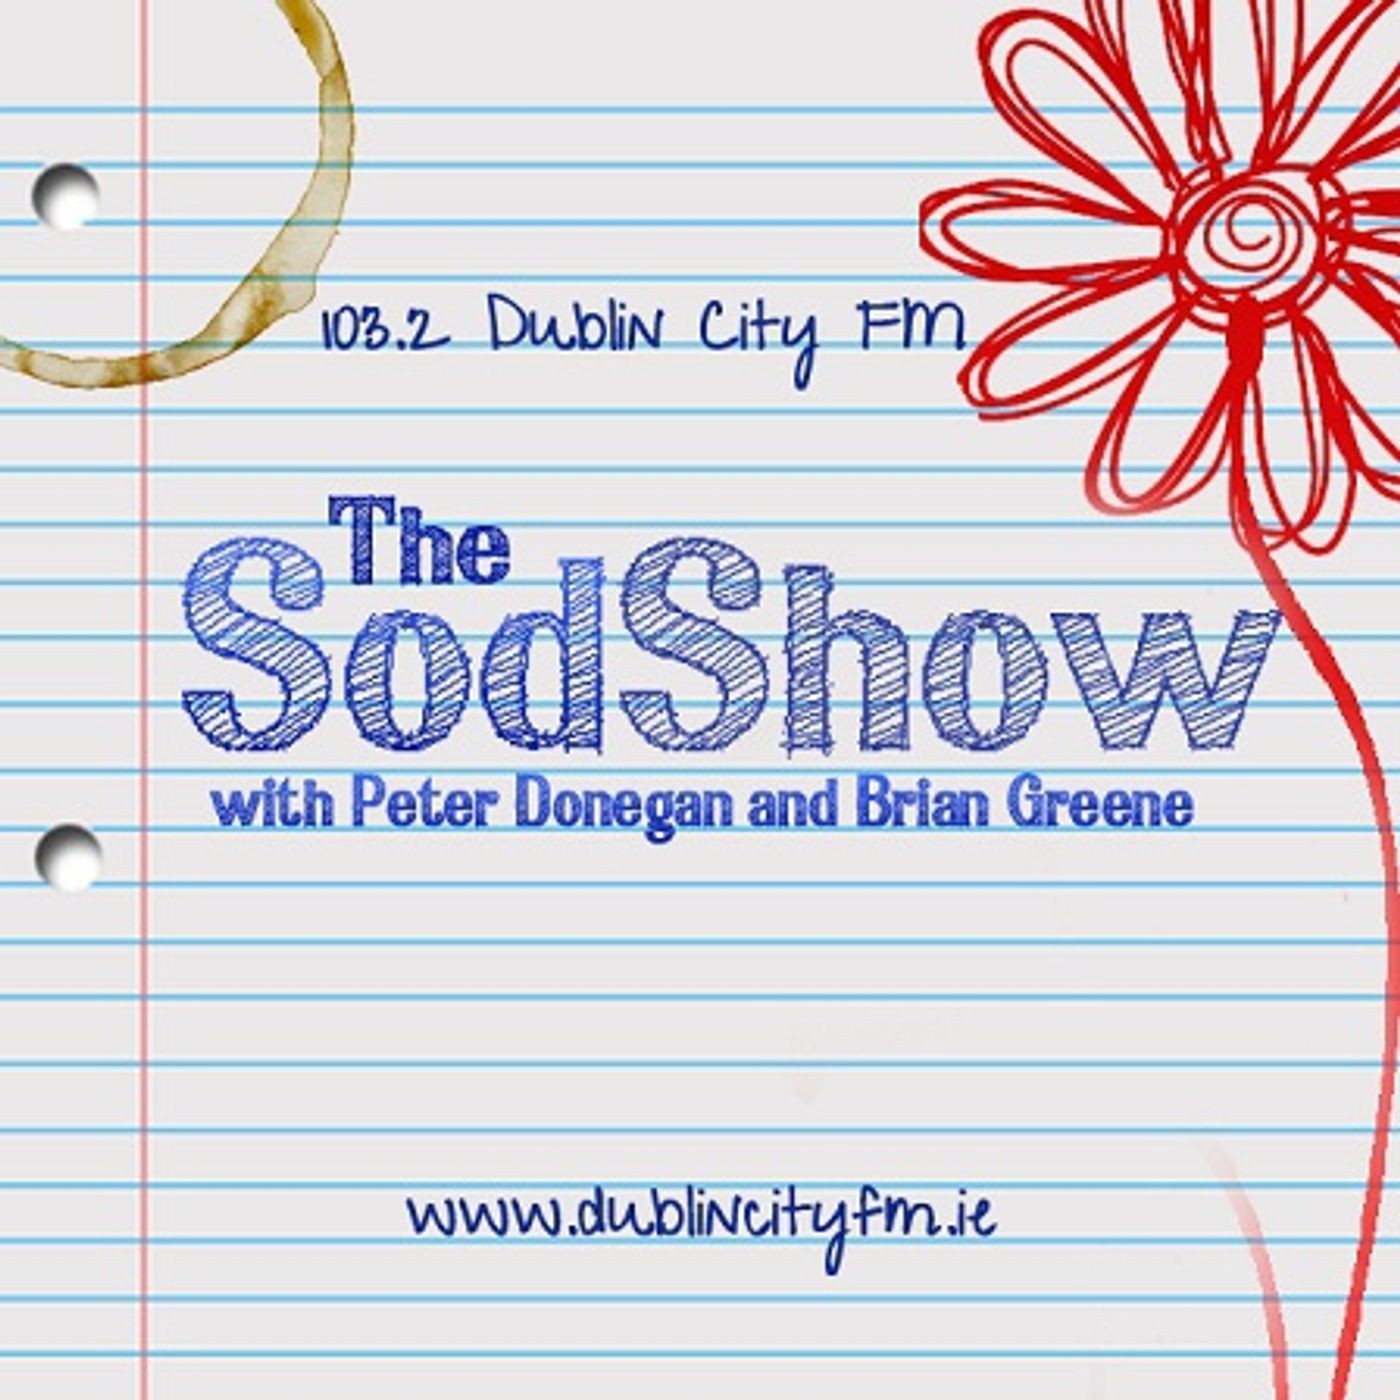 17: The #Sodshow – June 24 2011 Friday Garden Radio on Dublin City Fm